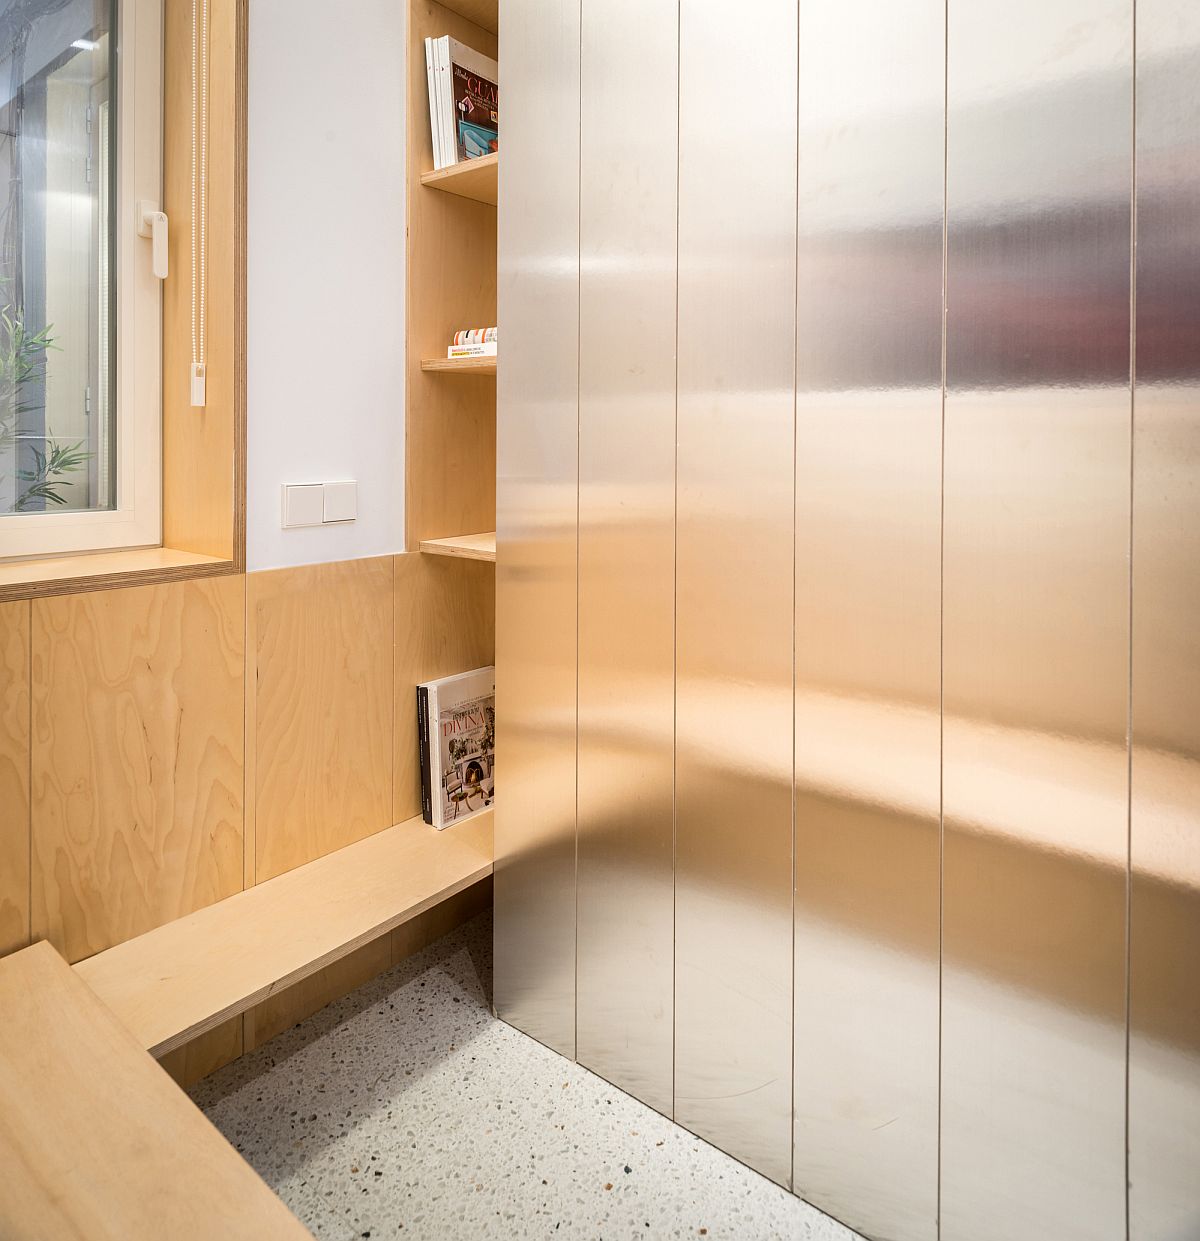 Hình ảnh cận cảnh một góc hệ tủ tường bằng thép phản chiếu ánh sáng, bên cạnh là tủ gỗ thông ấm áp